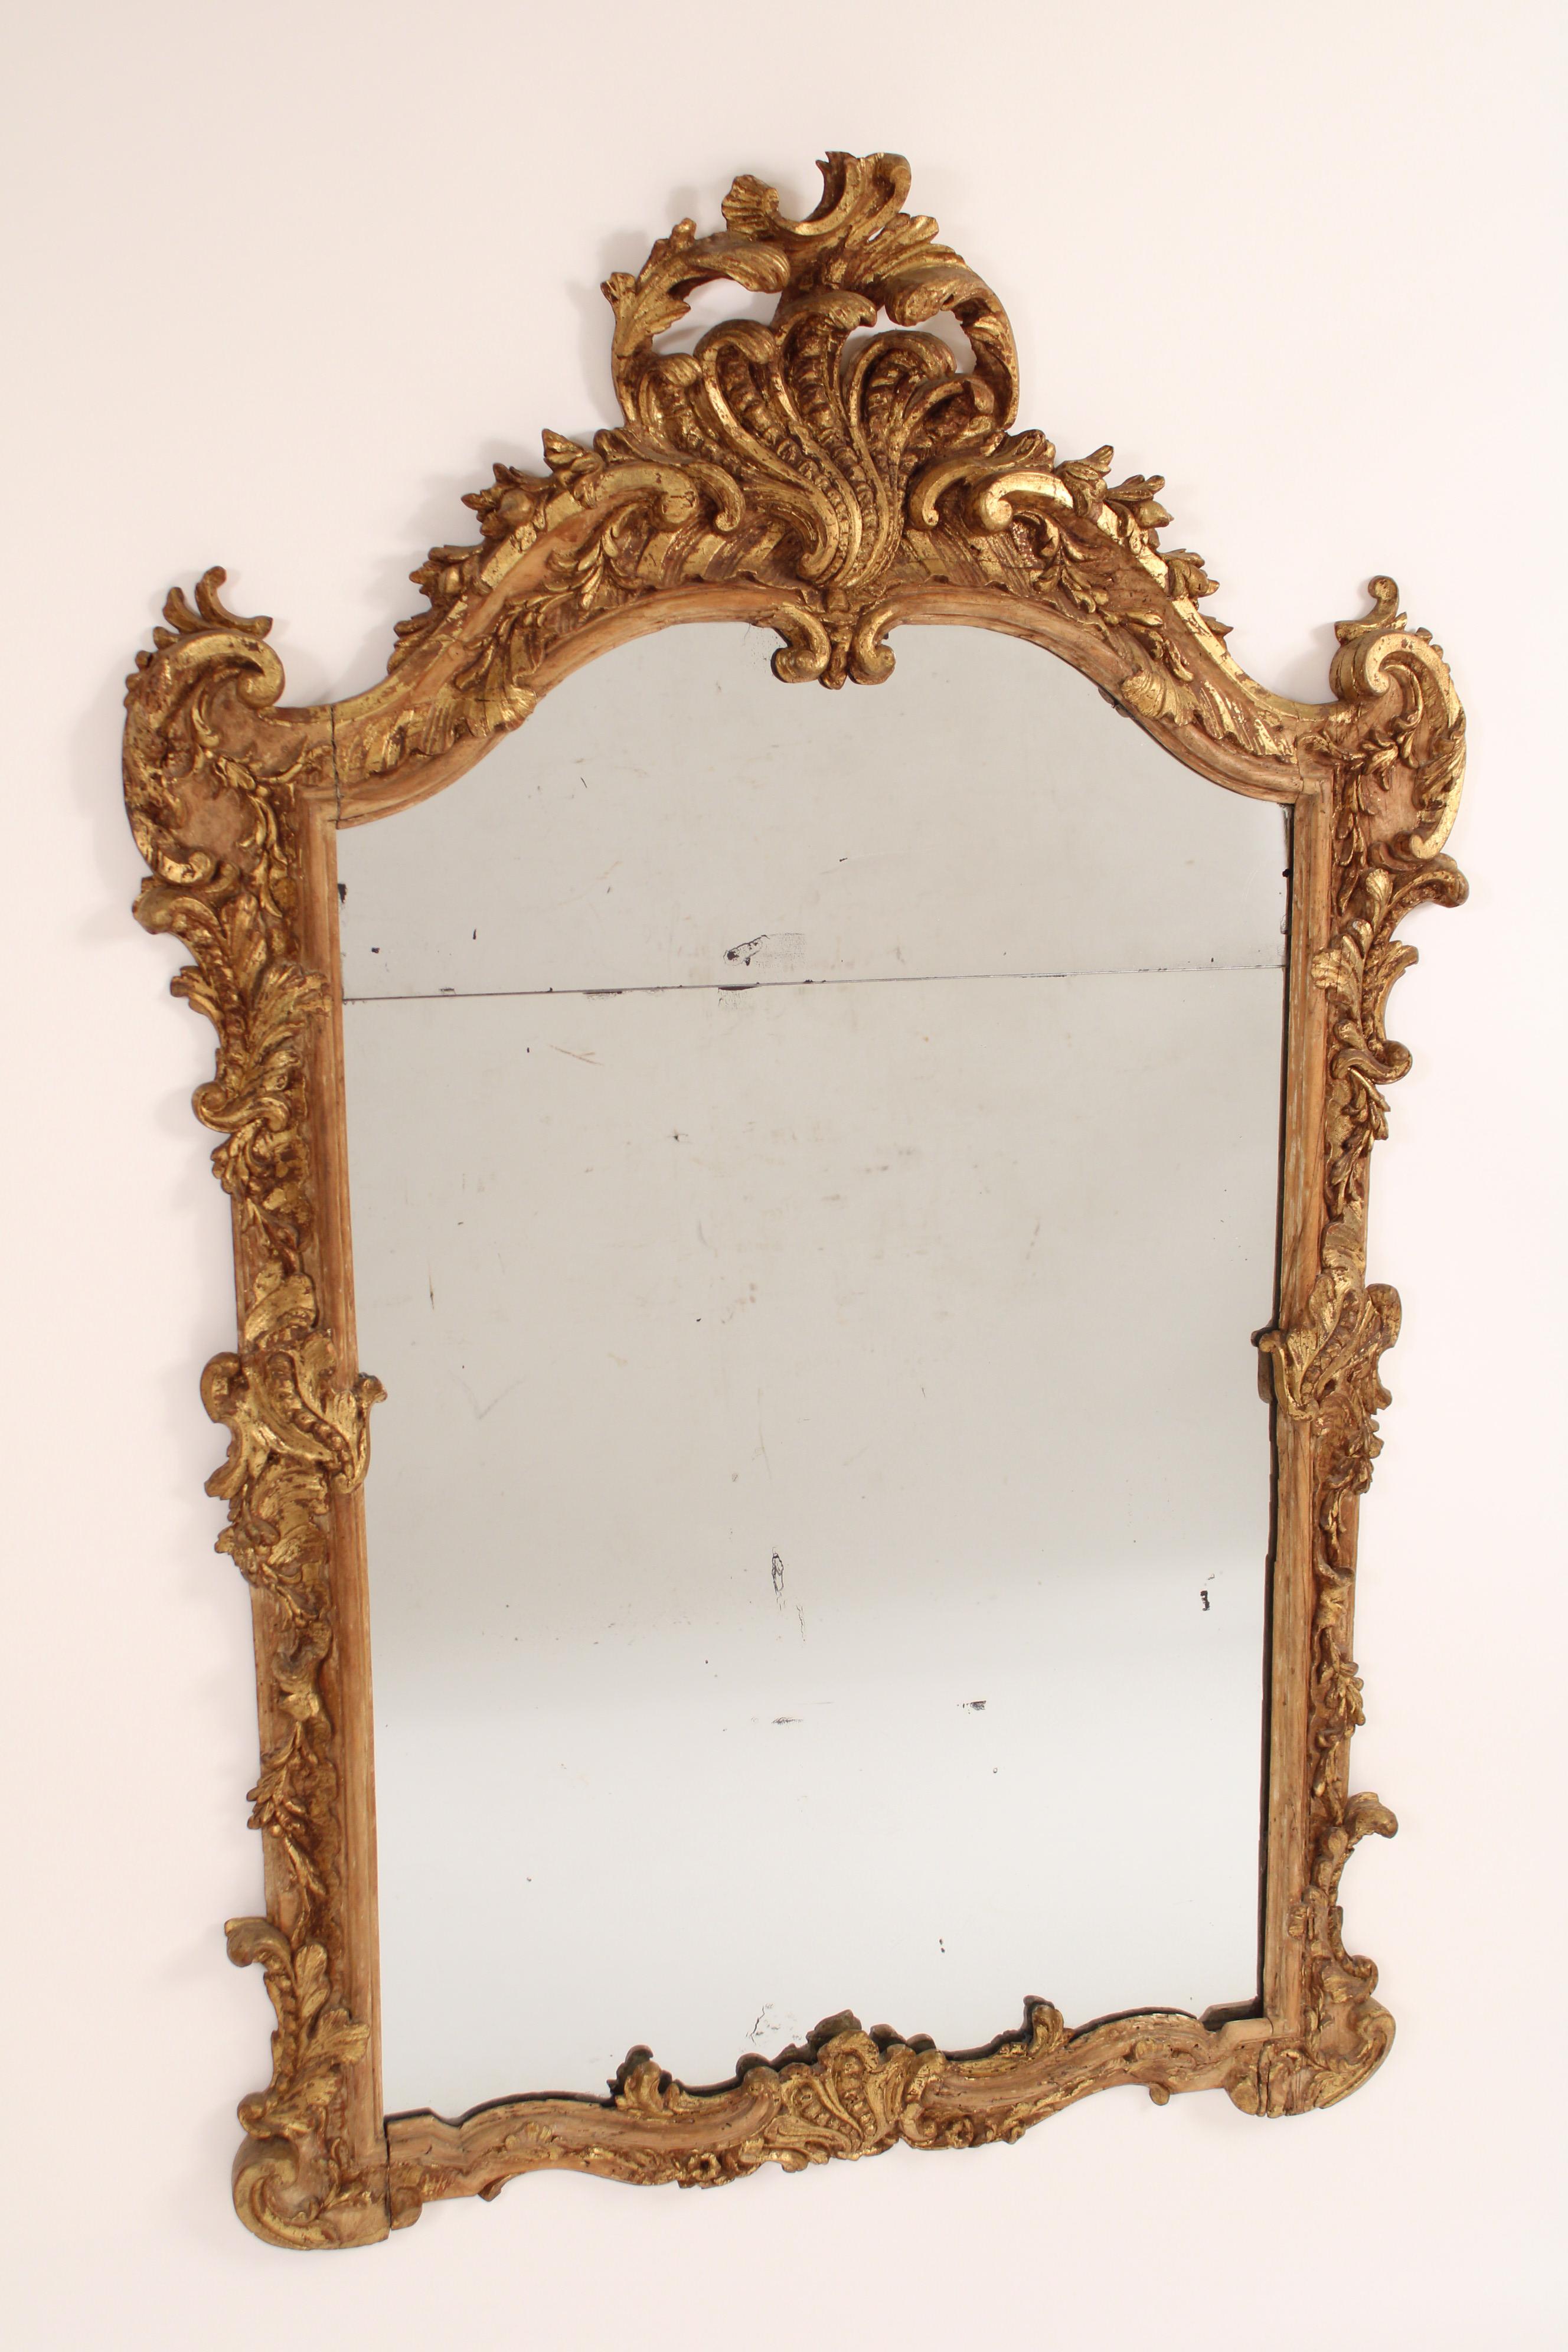 Miroir ancien de style Louis XV en bois doré, 19ème siècle. Avec un fronton sculpté de coquilles et de feuillages, des côtés sculptés de feuilles, la base du miroir sculptée de feuilles et de coquilles. Une partie importante de la dorure est